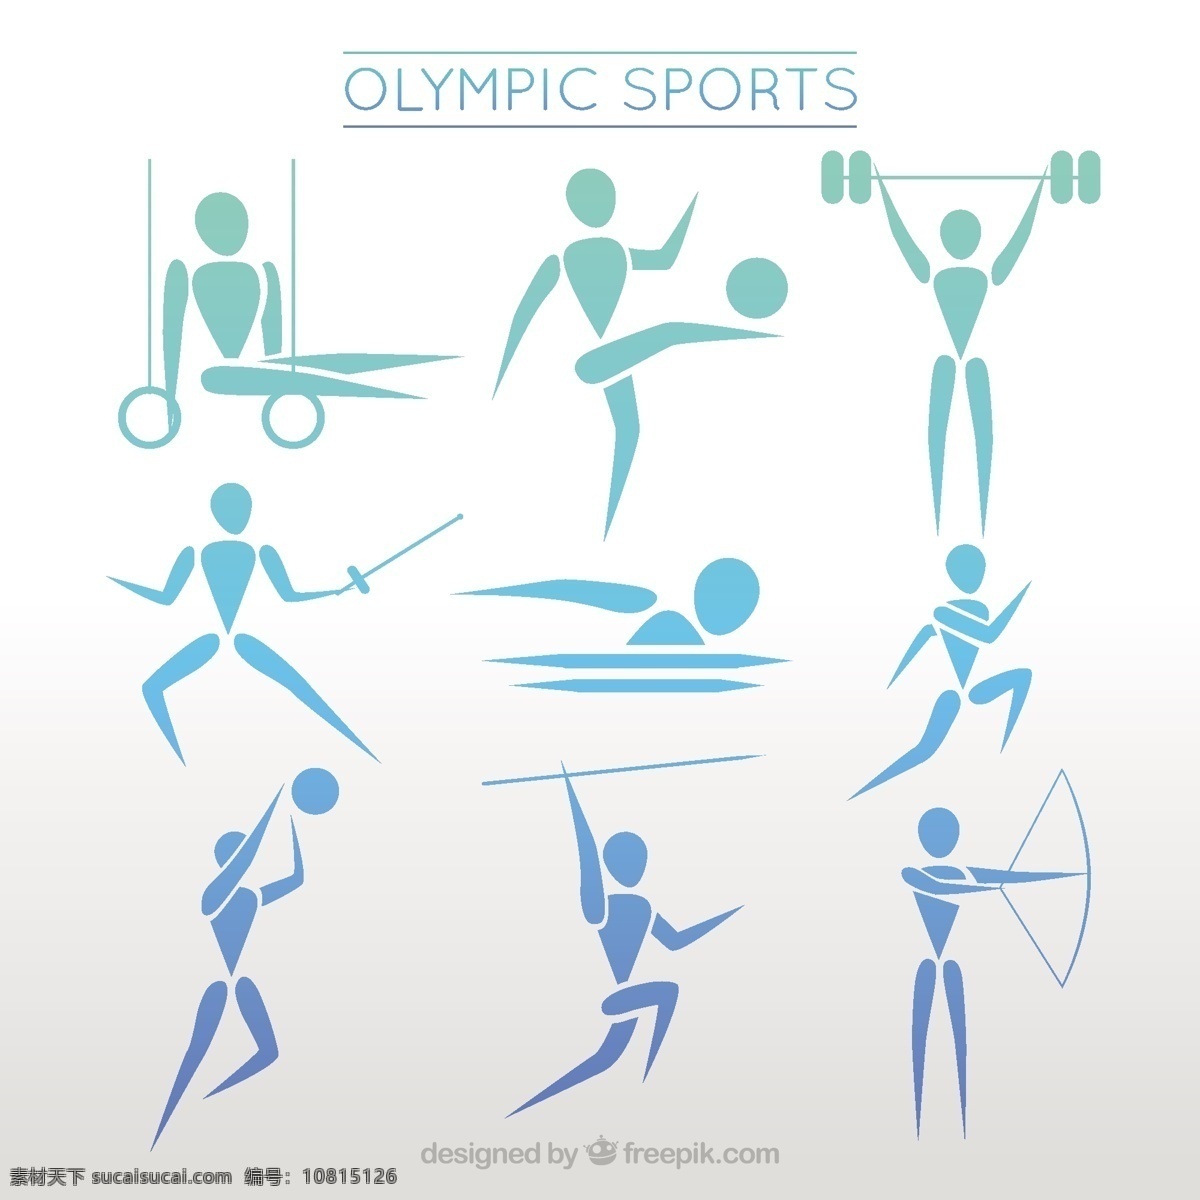 抽象 风格 奥林匹克 运动史 人 夏季 运动 健身 健康 体育 弓 事件 2016 现代 跑步 训练 运动会 巴西 体重